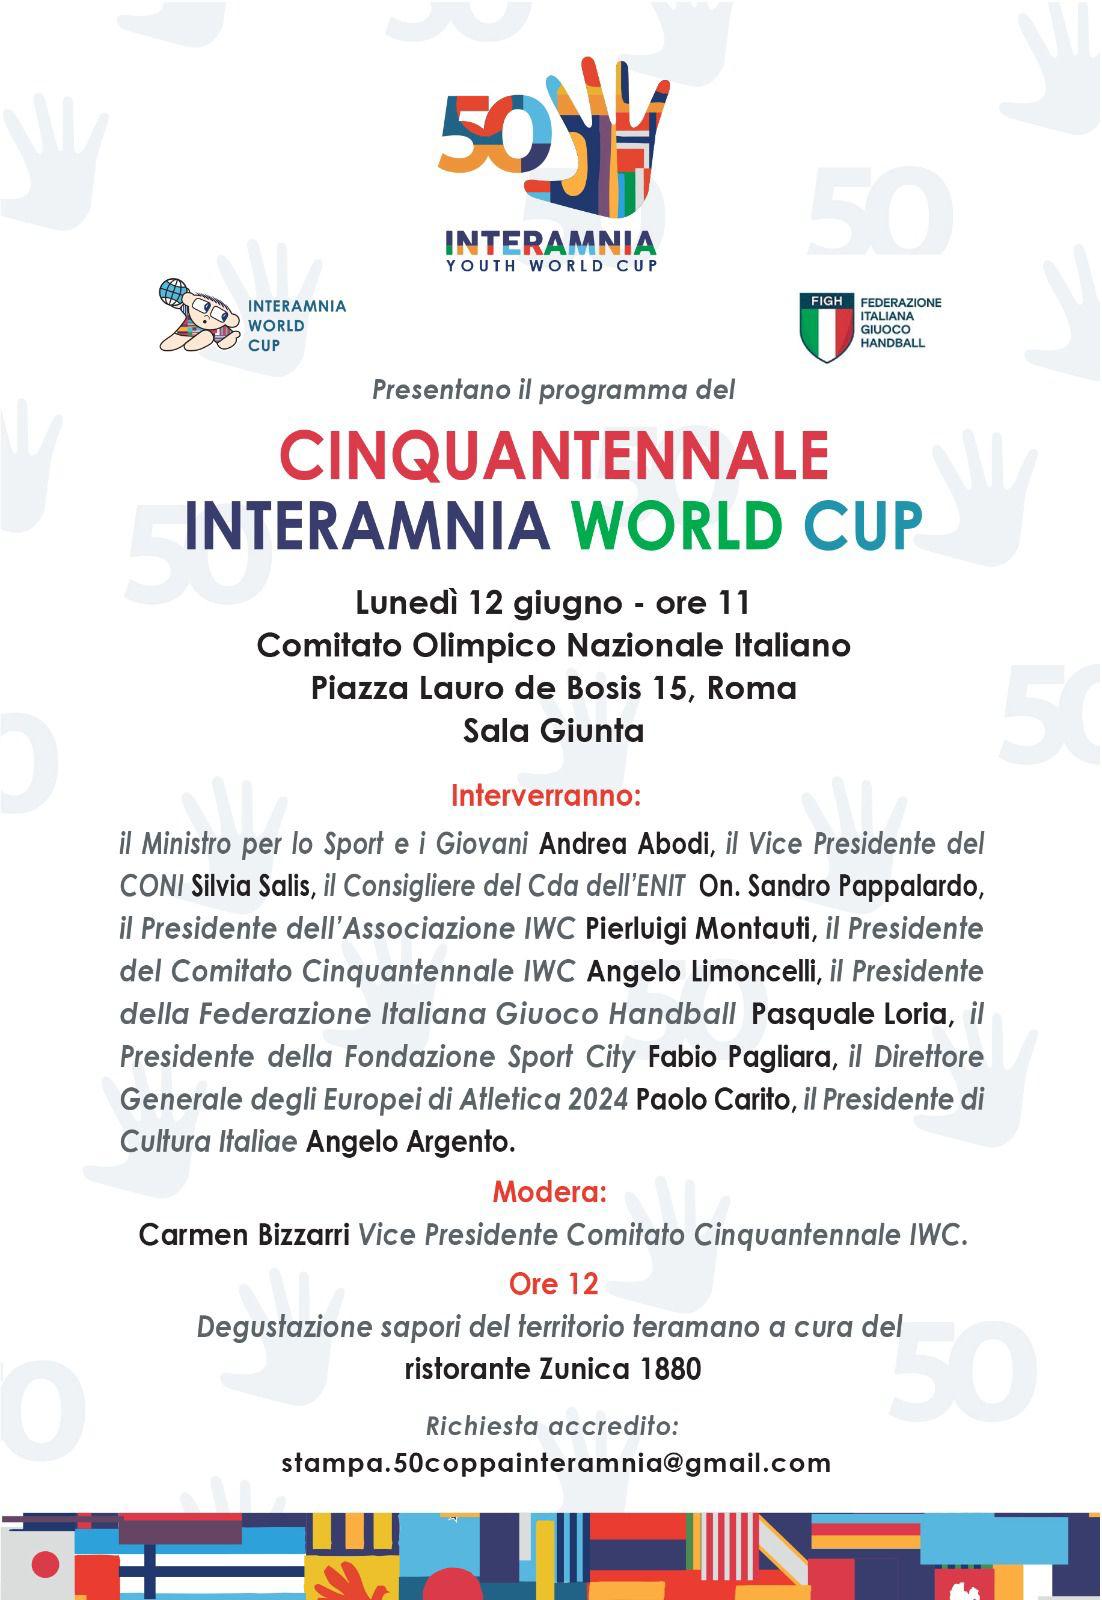 Cinquantennale Interamnia World Cup: a Roma la presentazione del programma